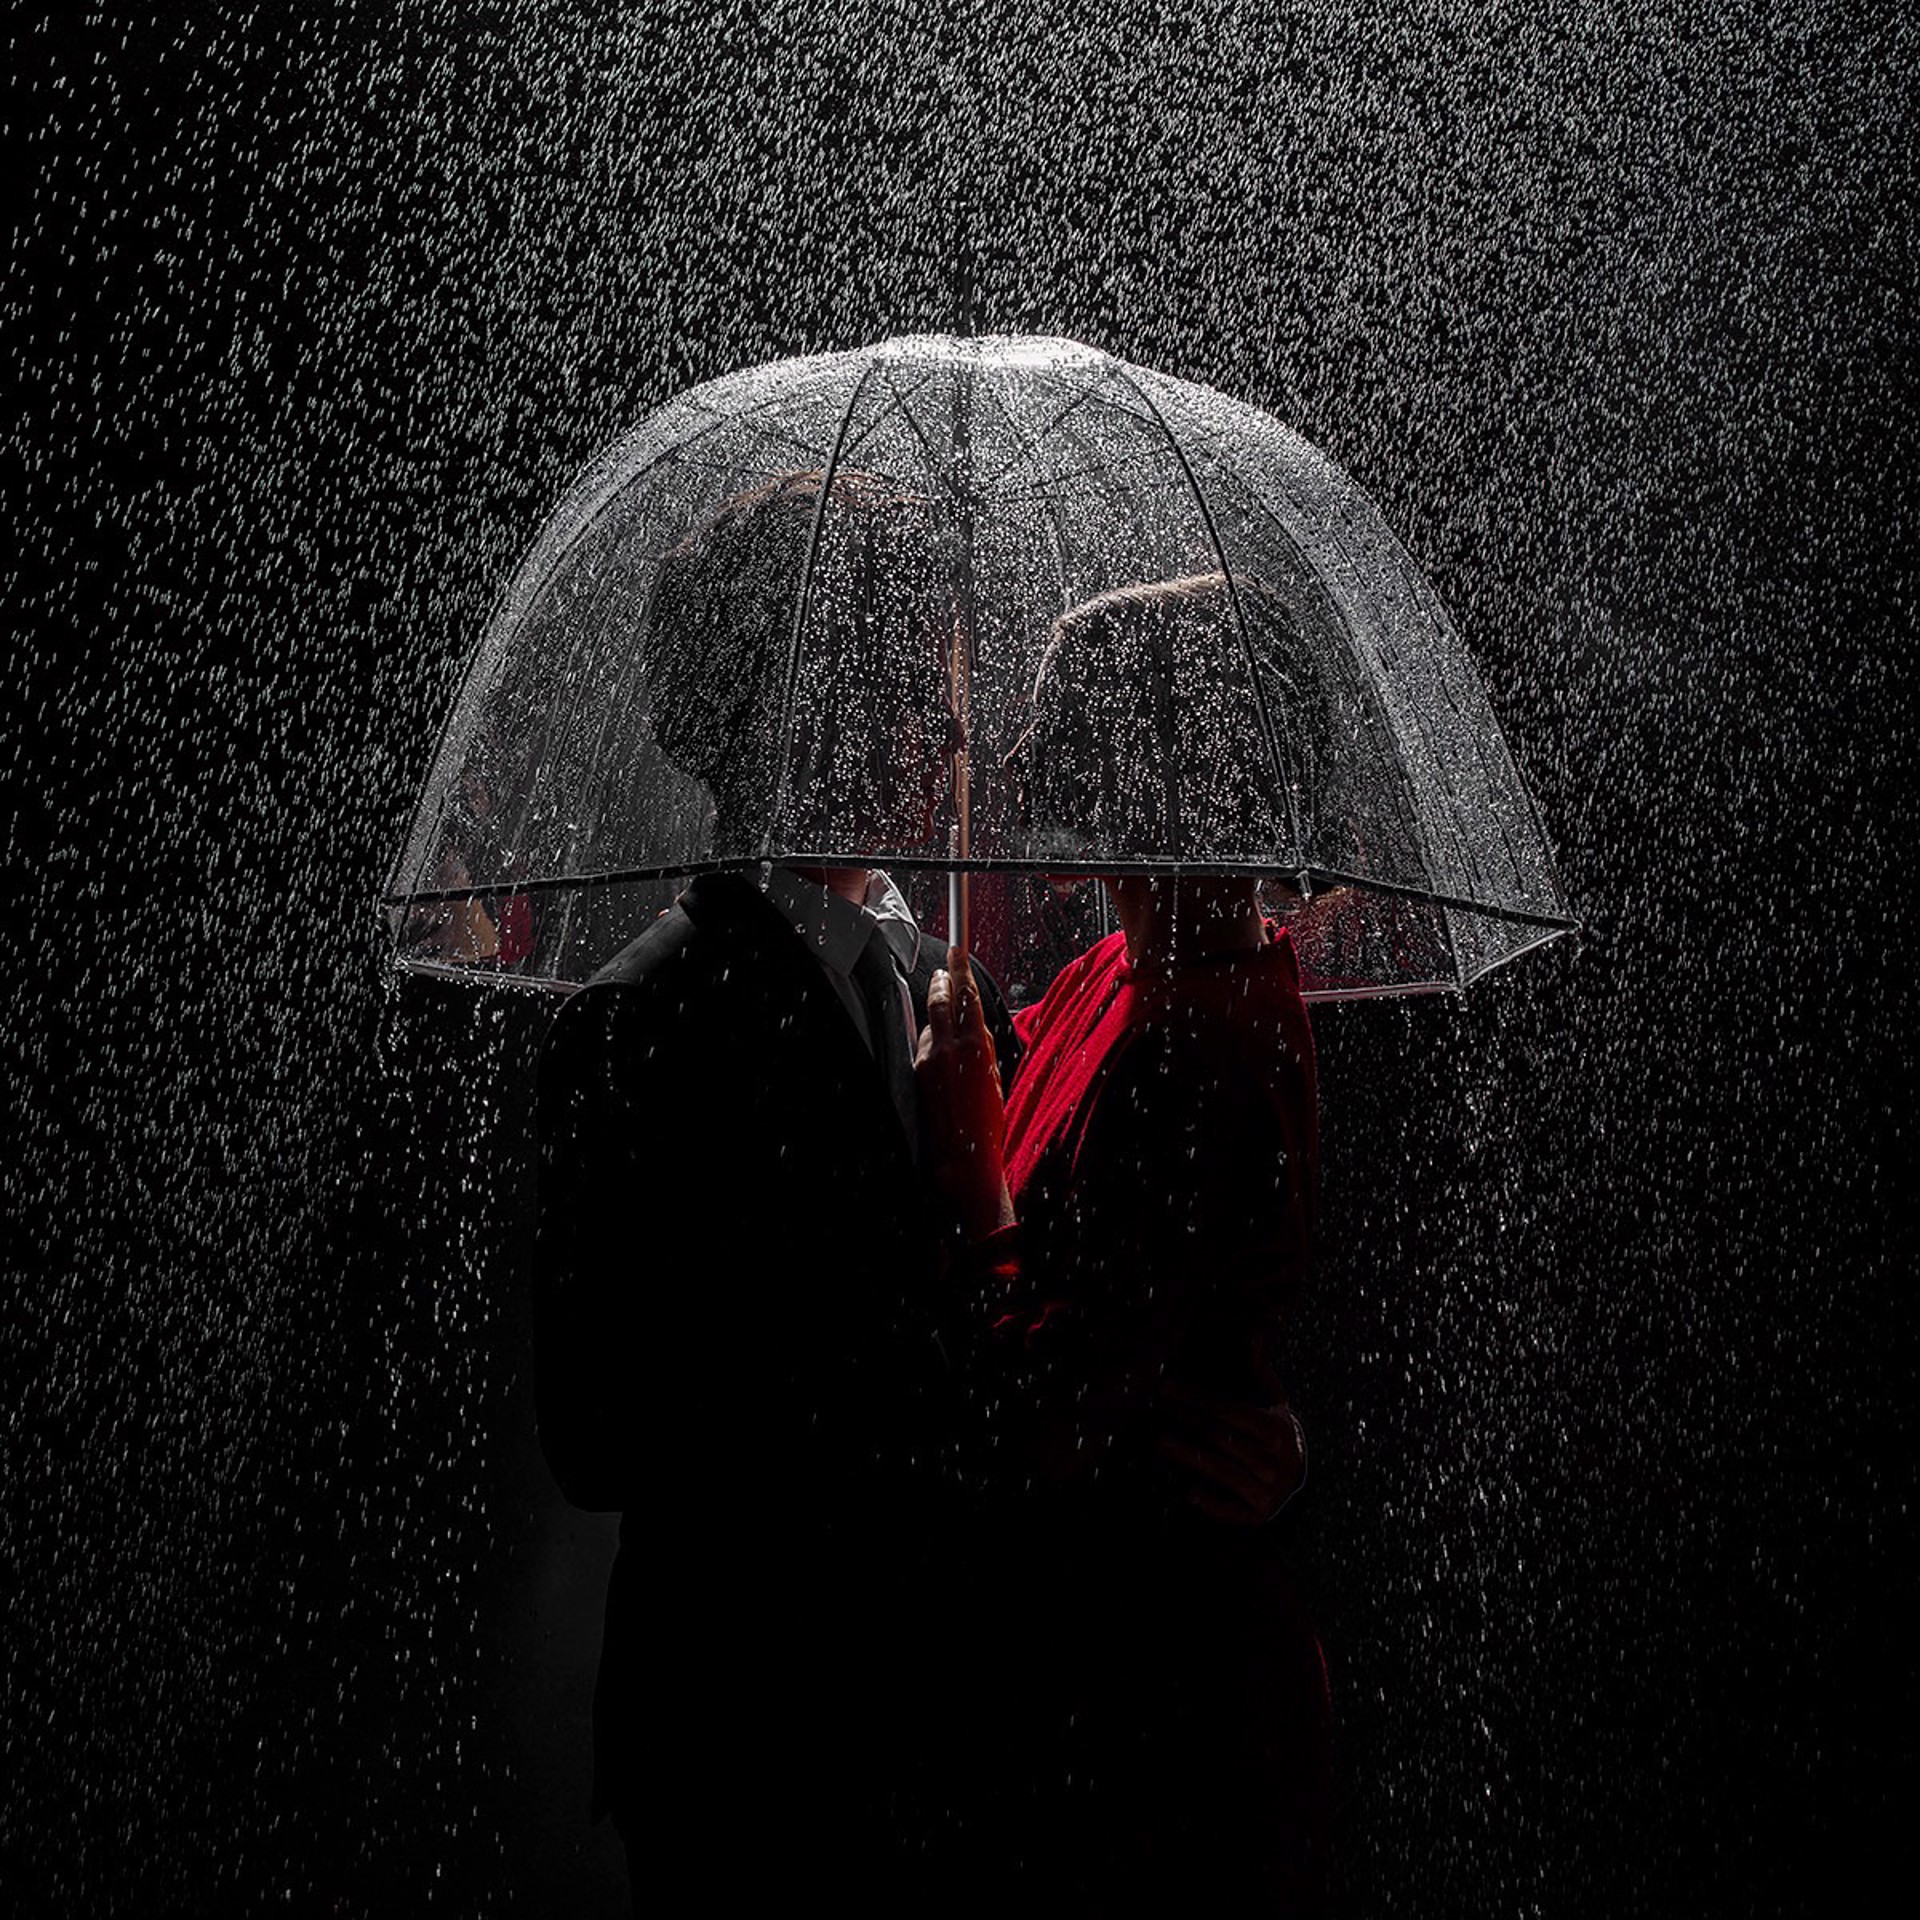 Under the Rain (AP3) by Tyler Shields